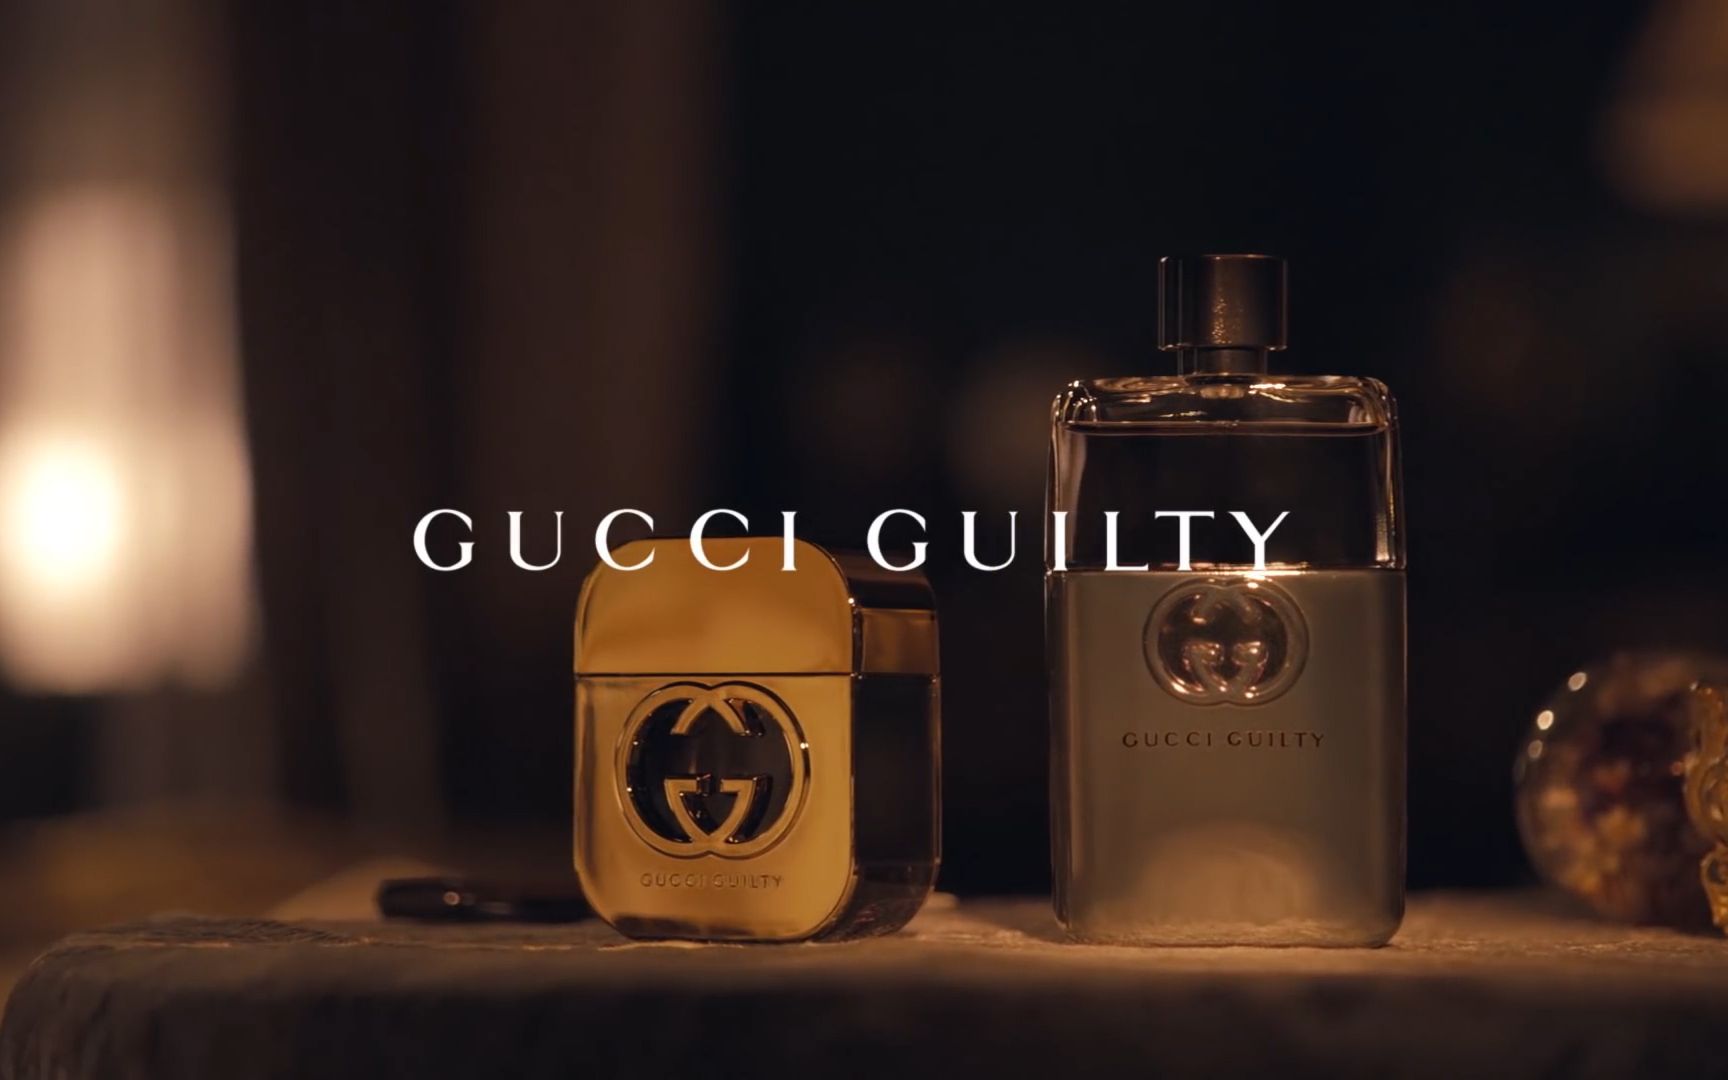 【时尚 | GUCCI】Gucci Guilty 罪爱香水广告《Teaser》_哔哩哔哩 (゜-゜)つロ 干杯~-bilibili